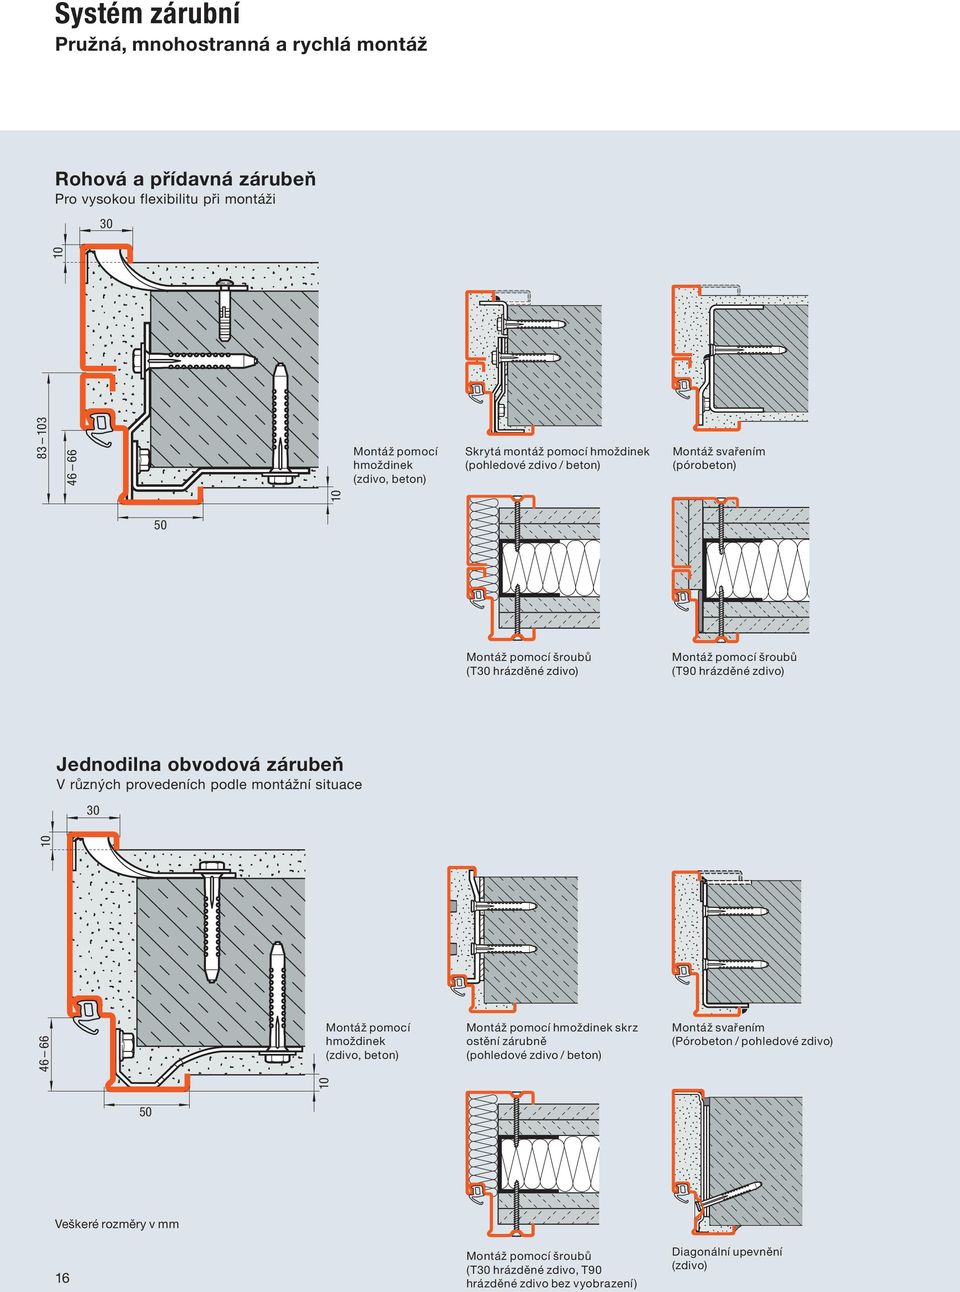 obvodová zárubeň V různých provedeních podle montážní situace 10 Montáž pomocí hmoždinek (zdivo, beton) Montáž pomocí hmoždinek skrz ostění zárubně (pohledové zdivo / beton) Montáž